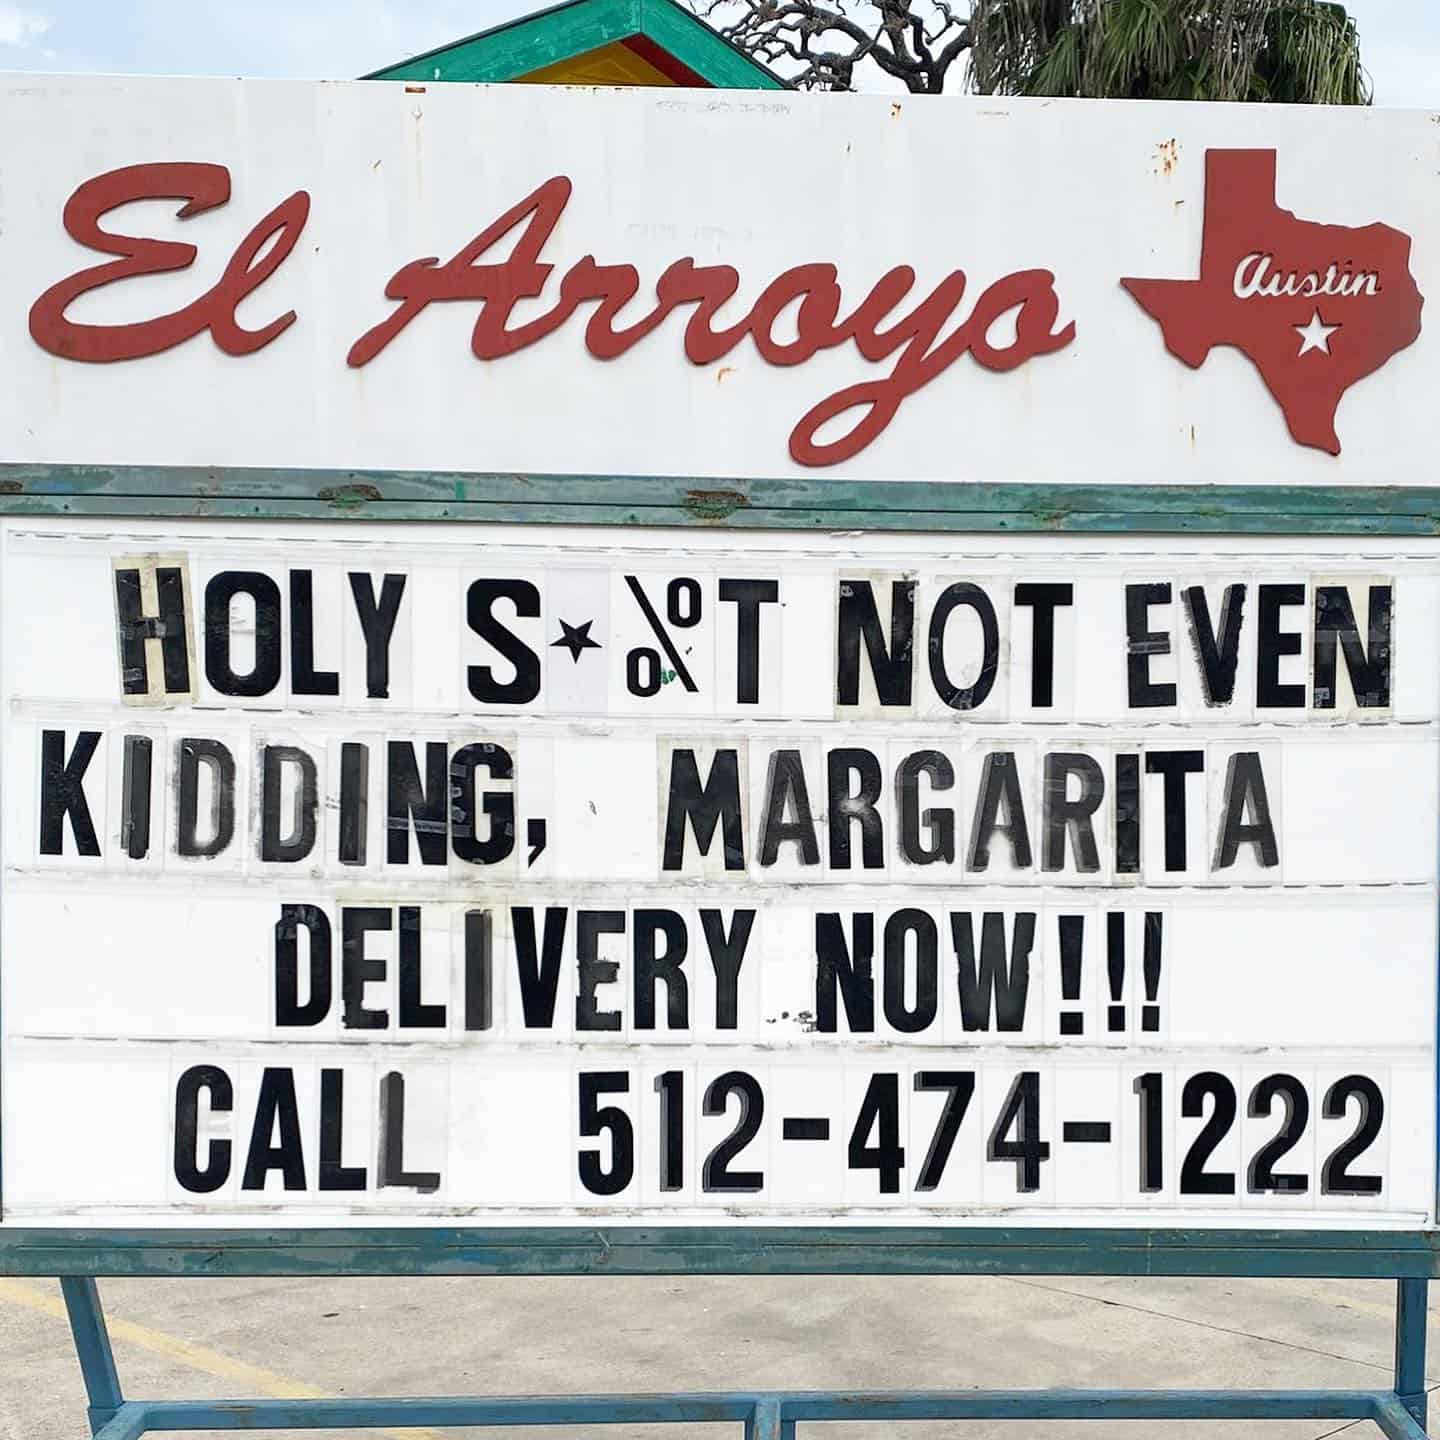 El Arroyo in Austin Texas